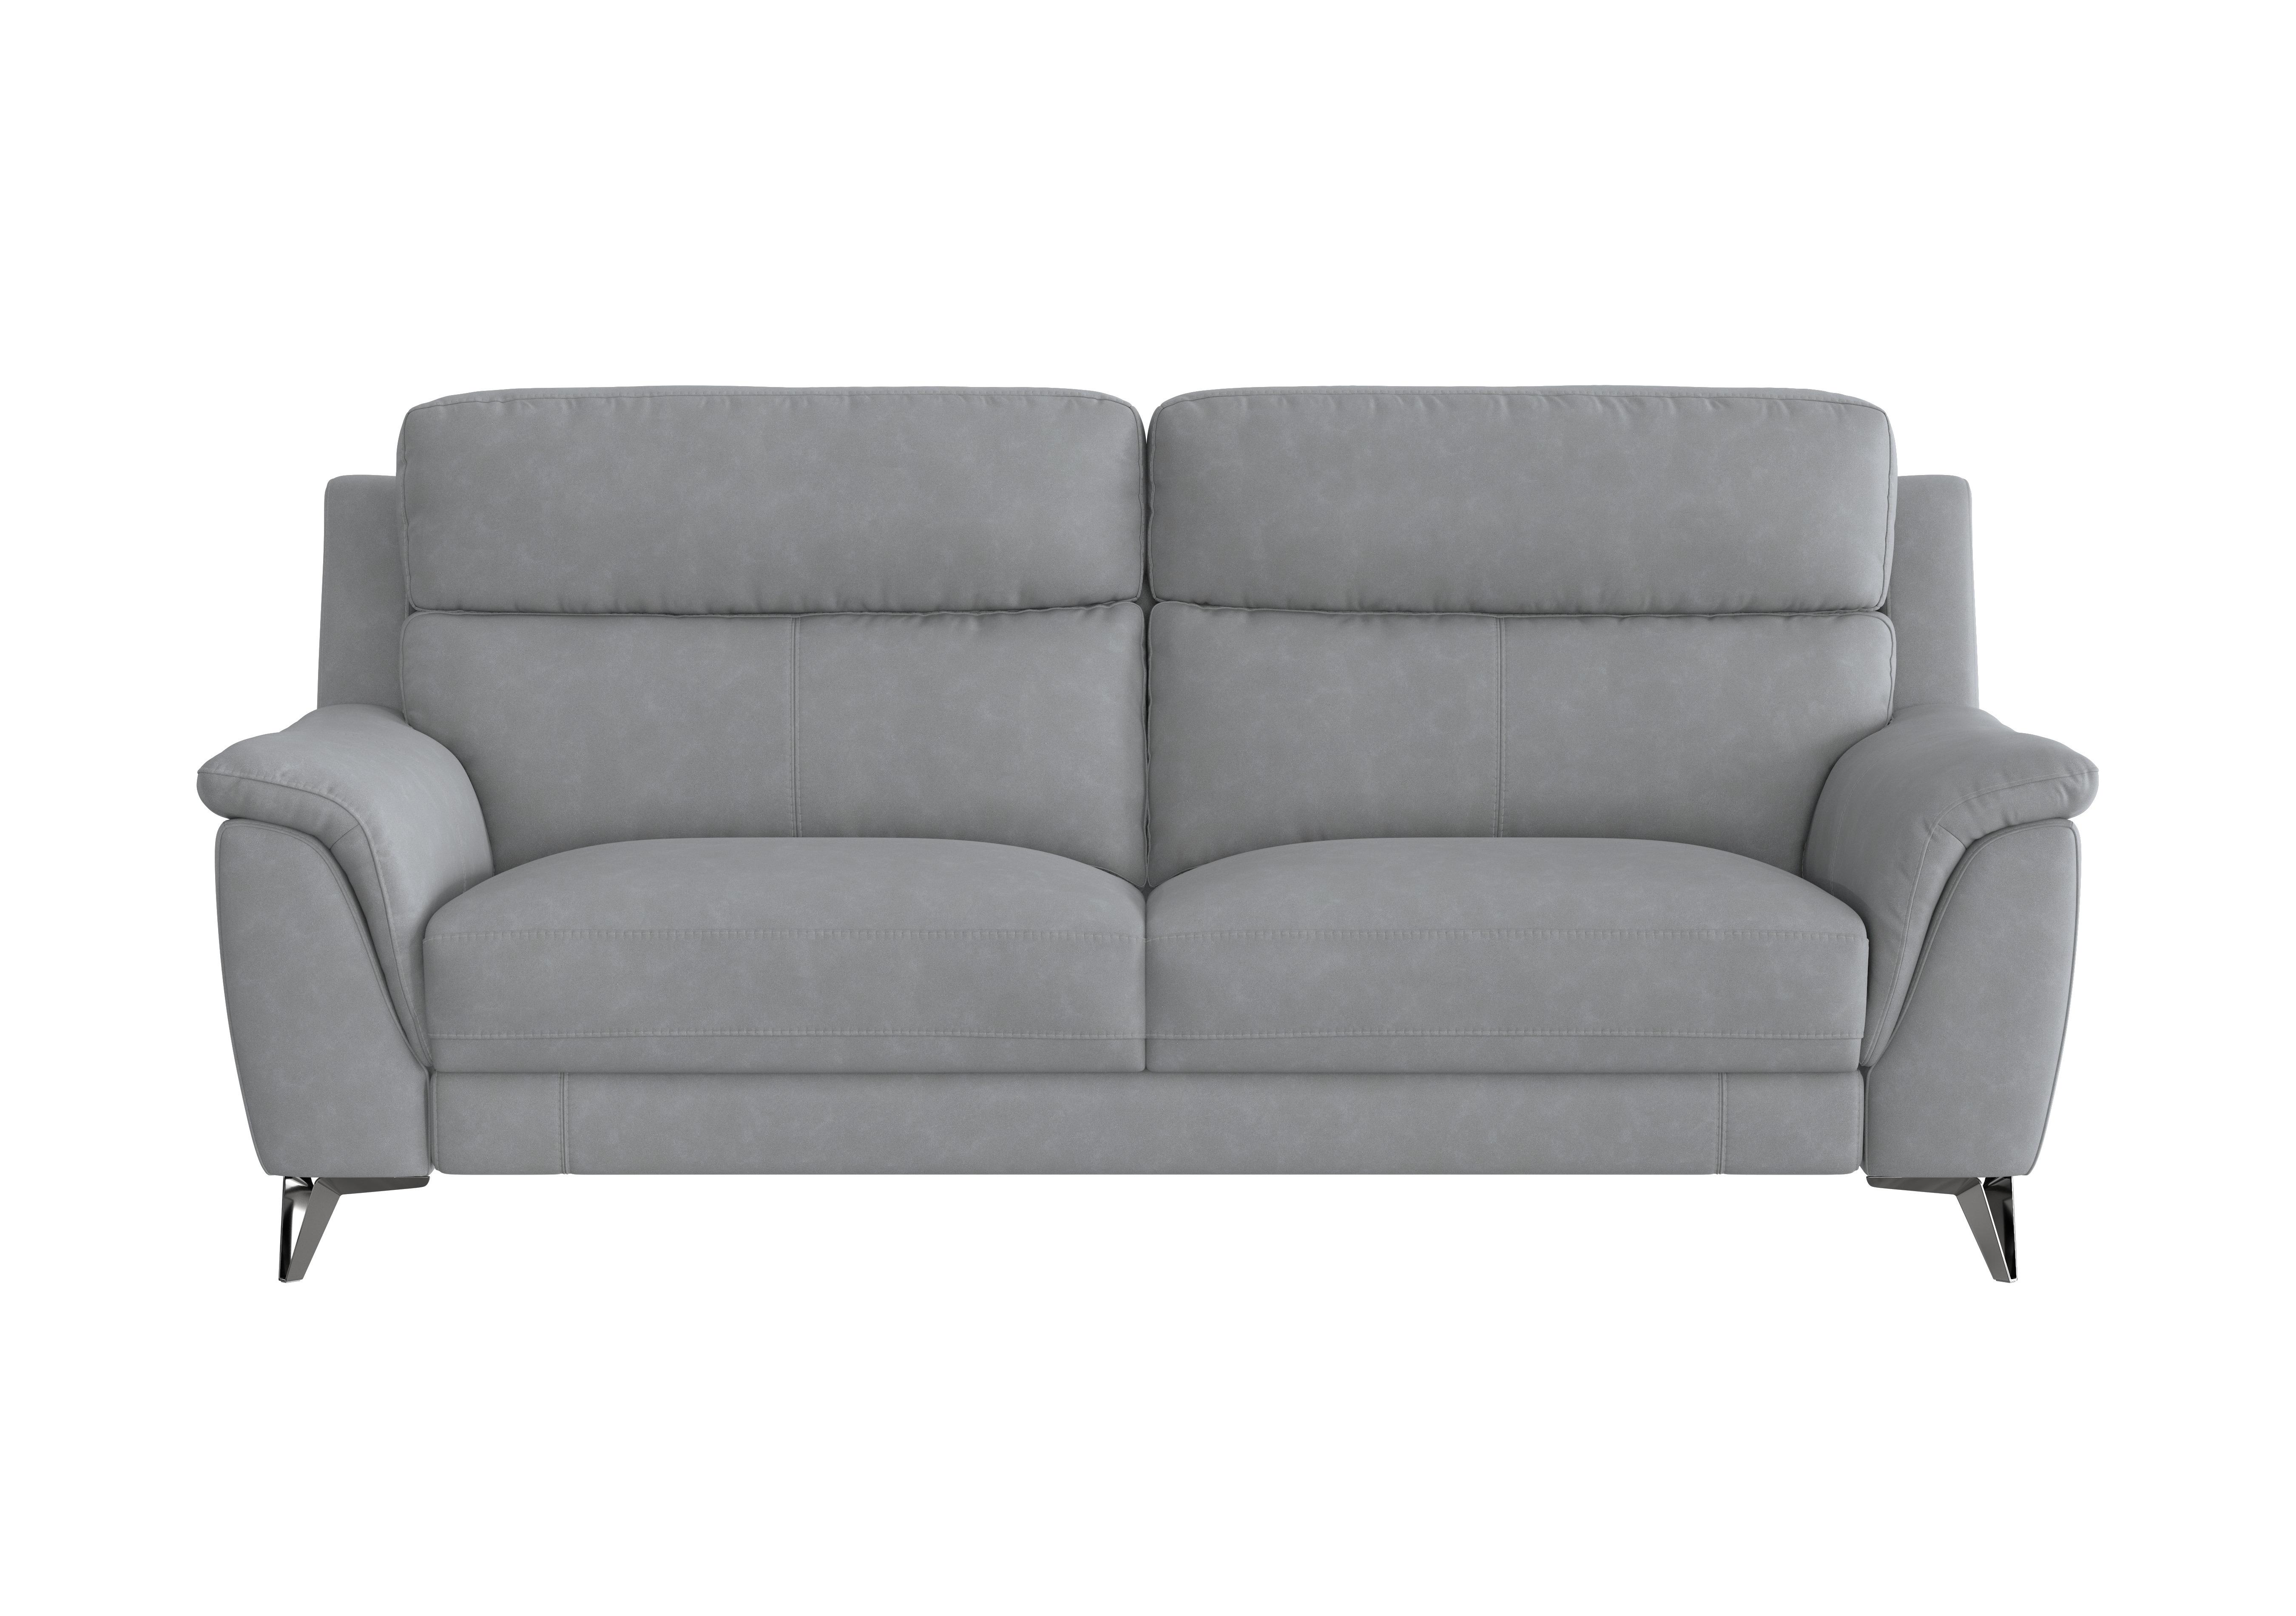 Contempo 3 Seater Fabric Sofa in Bfa-Ori-R07 Bluish Grey on Furniture Village